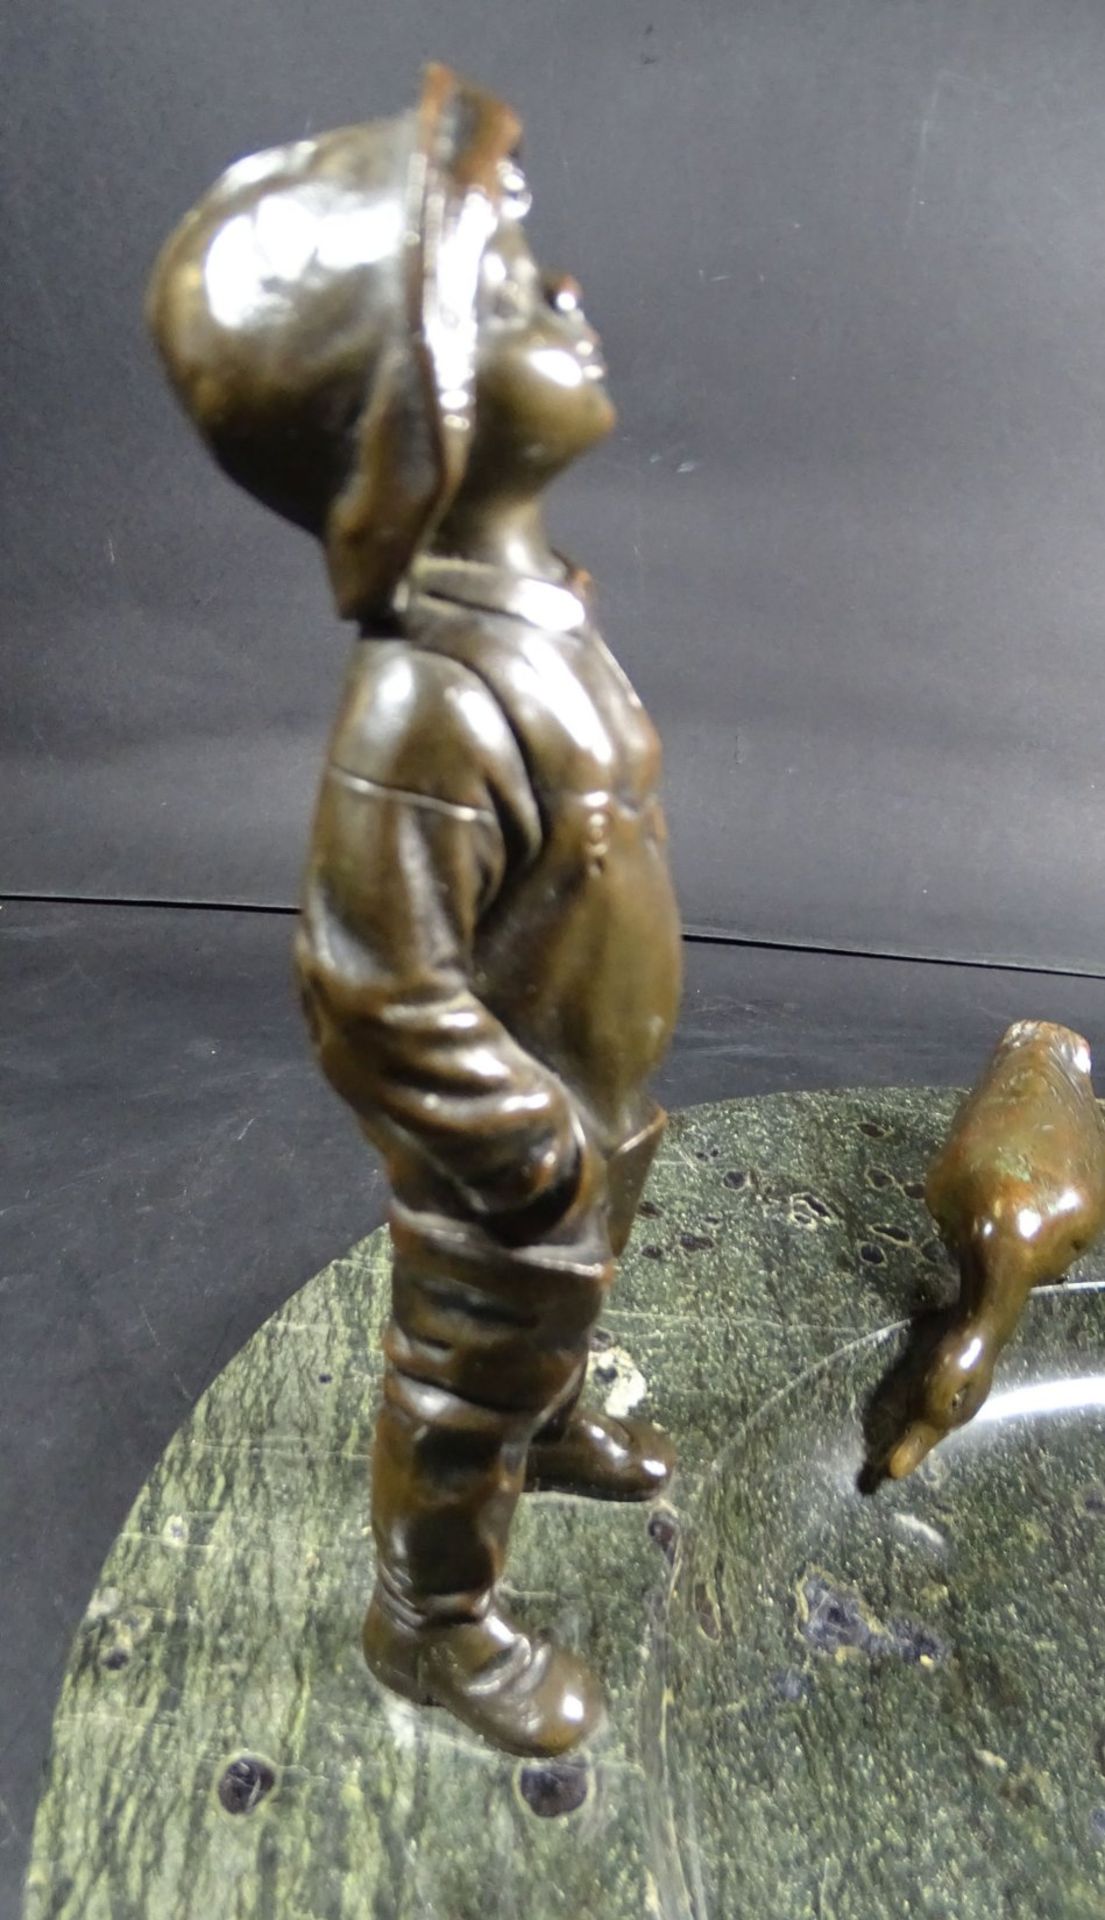 Ablageschale aus Serpentin mit Bronze Lausbub und Ente, D-30 cm, H-20 cm- - -22.61 % buyer's premium - Bild 4 aus 6